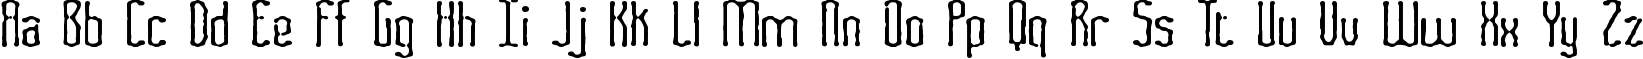 Пример написания английского алфавита шрифтом Fascii Smudge BRK